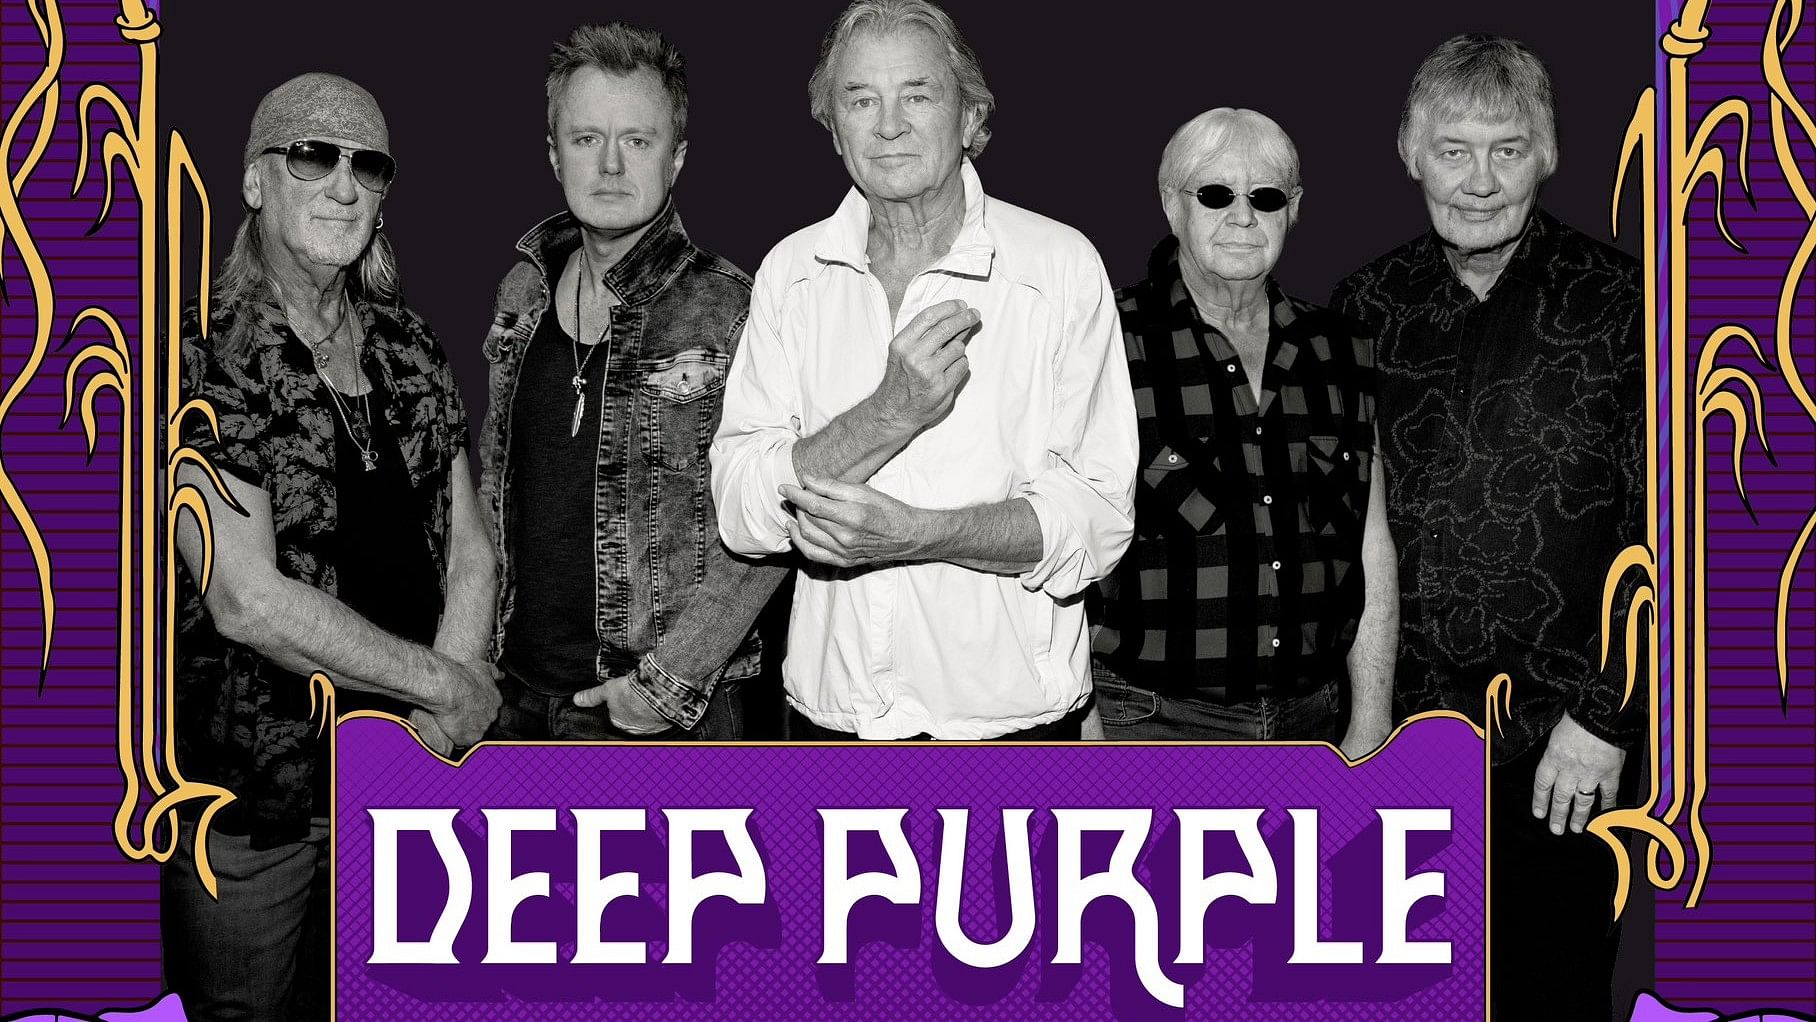 <div class="paragraphs"><p>Deep Purple.</p></div>